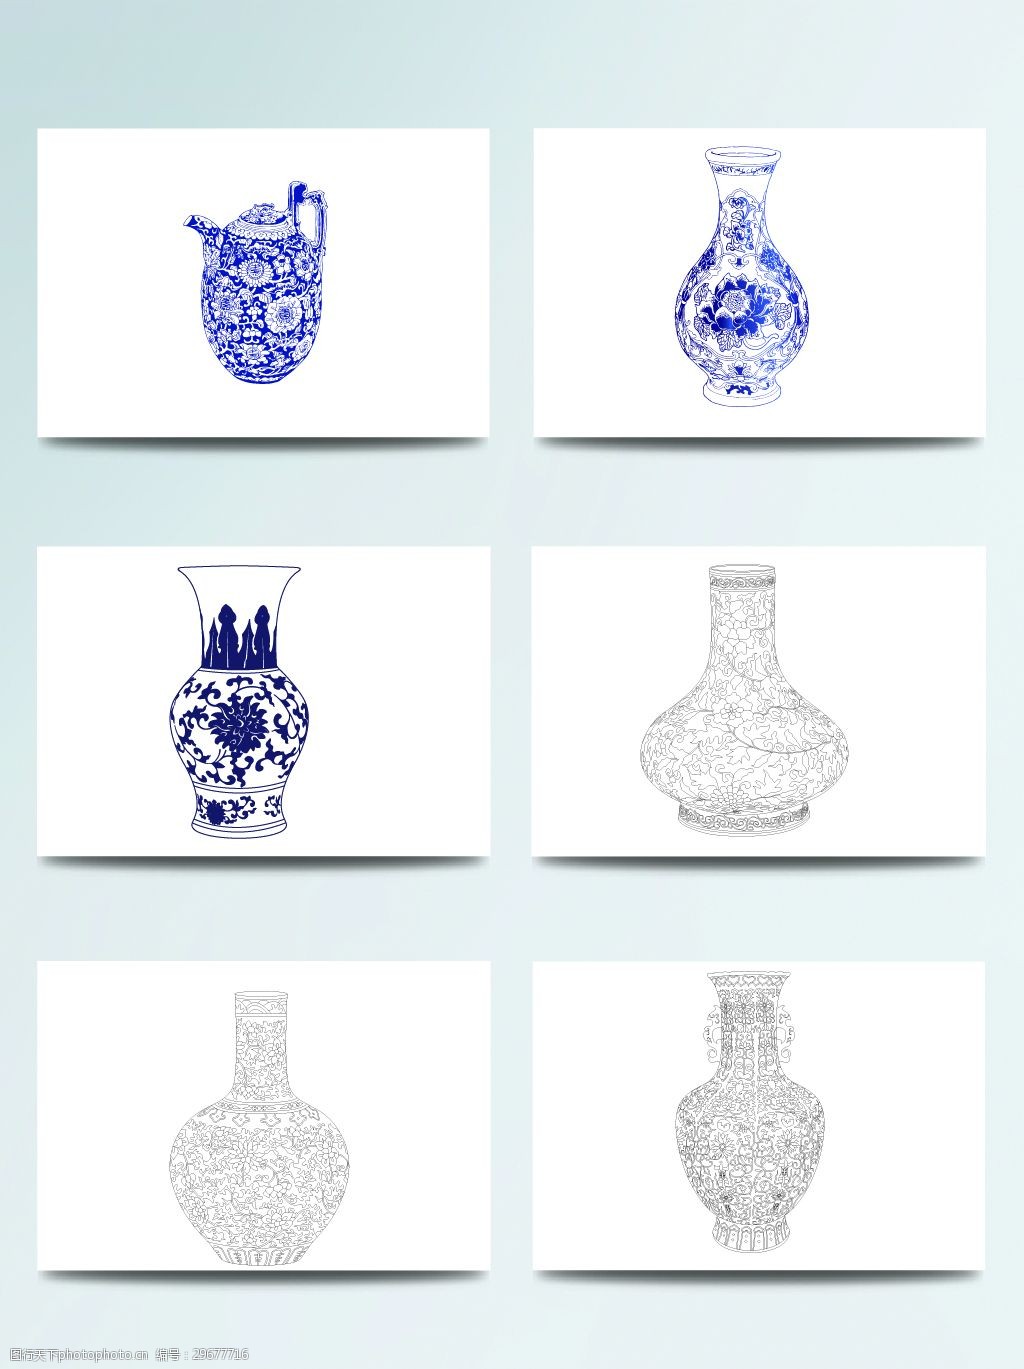 关键词:插画 花瓶 静物 青花 矢量图 陶瓷 中国风 装饰 青花花瓶矢量